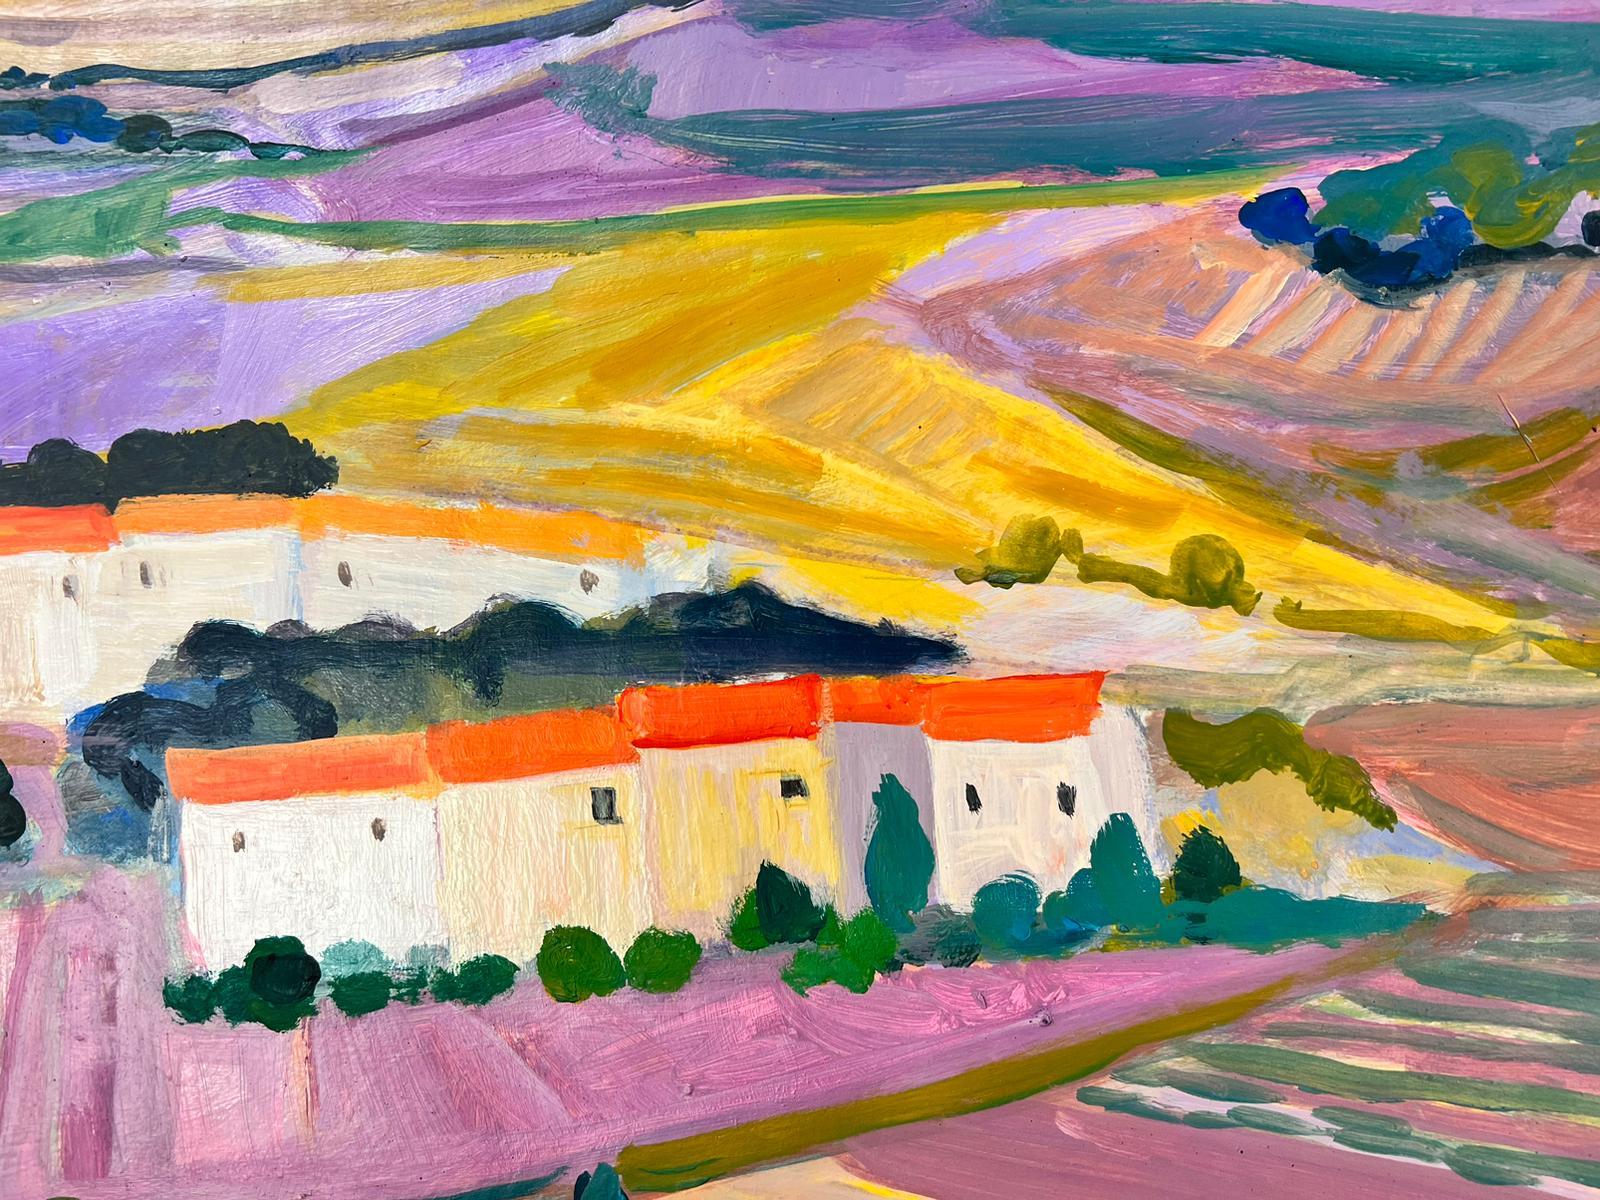 Les champs lavandes de Provence - Grande peinture contemporaine française moderniste - Moderne Painting par Huguette Ginet-Lasnier 